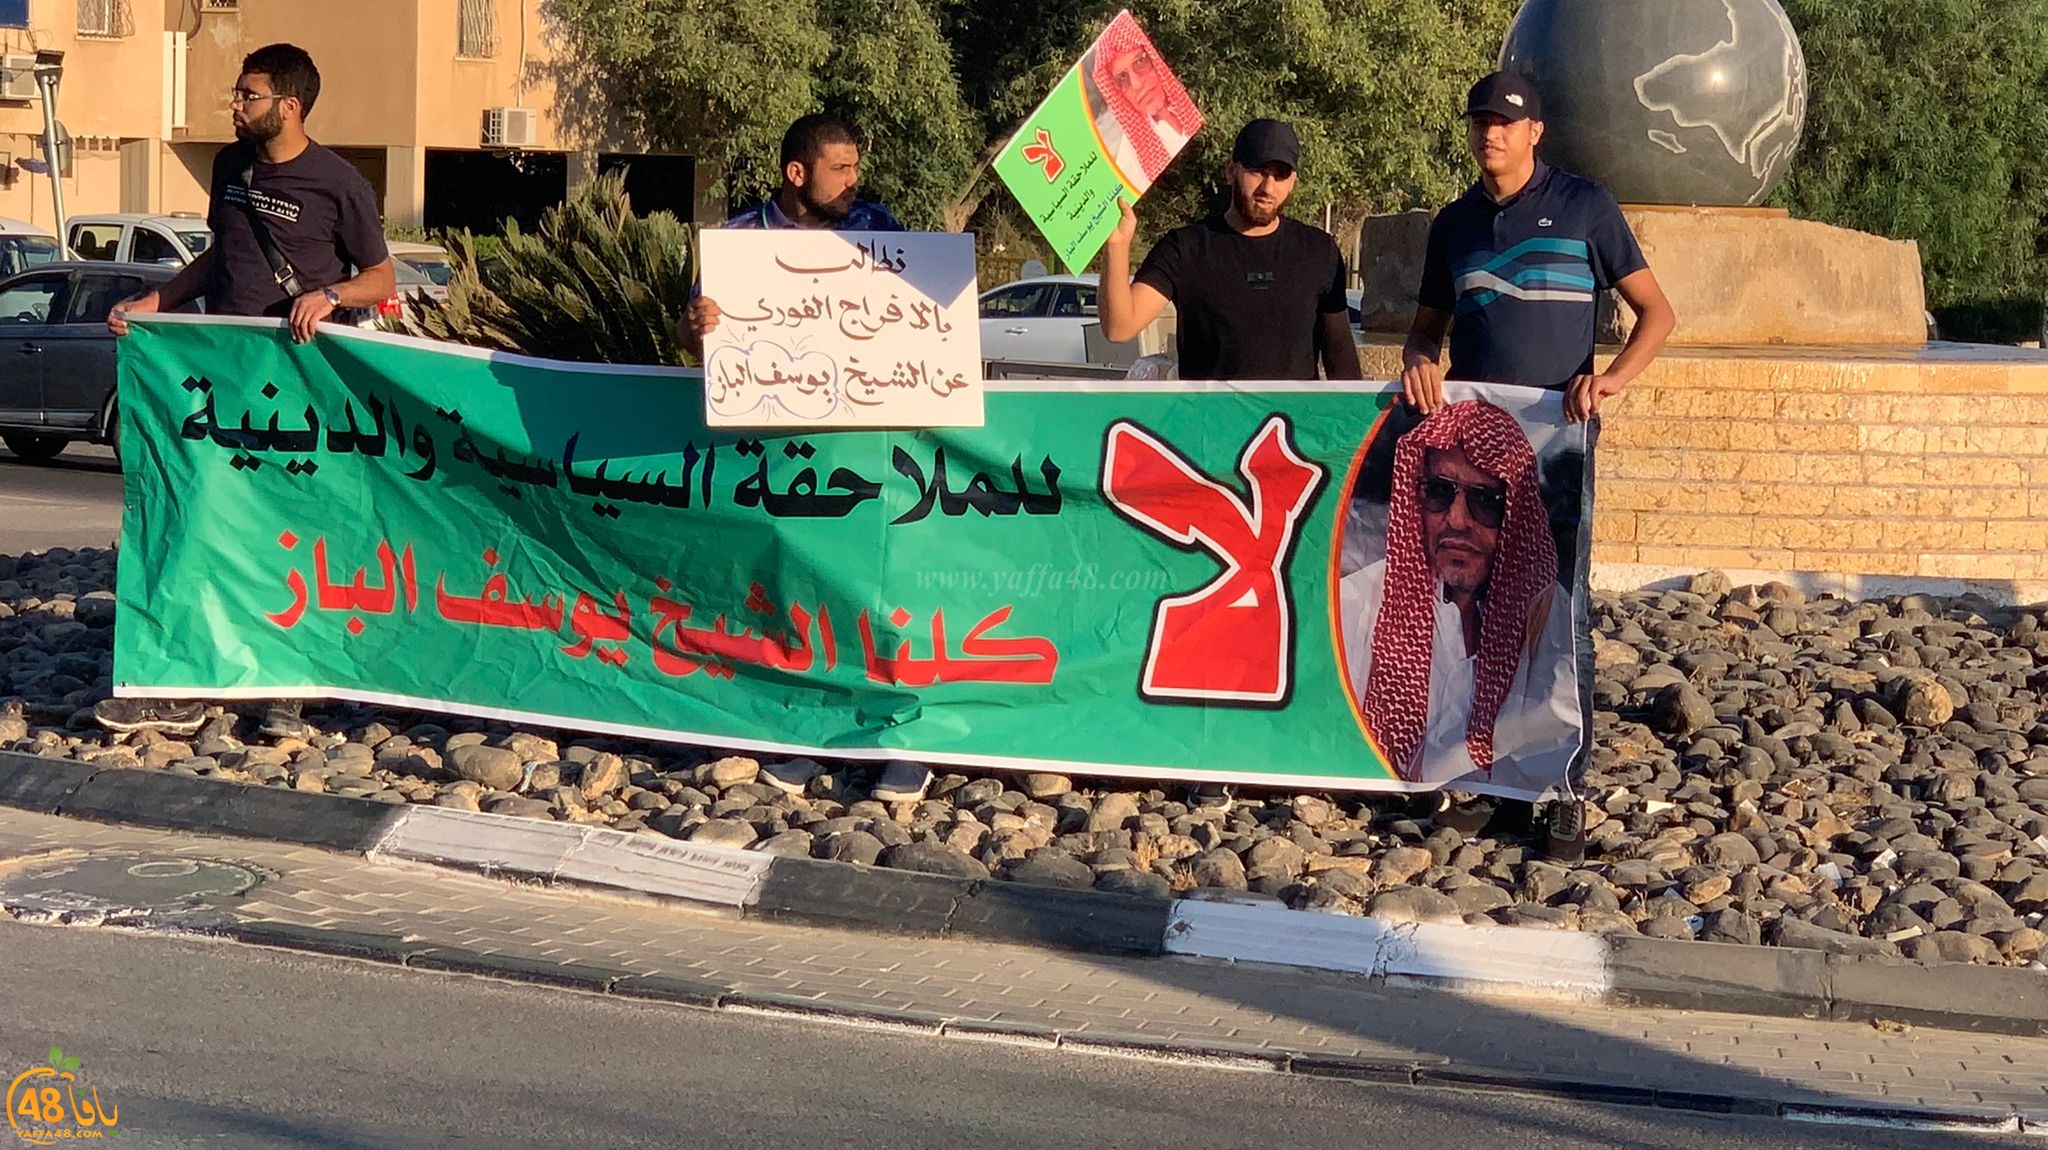  اليوم: وقفة تضامنية مع الشيخ يوسف الباز أمام مستشفى سوروكا